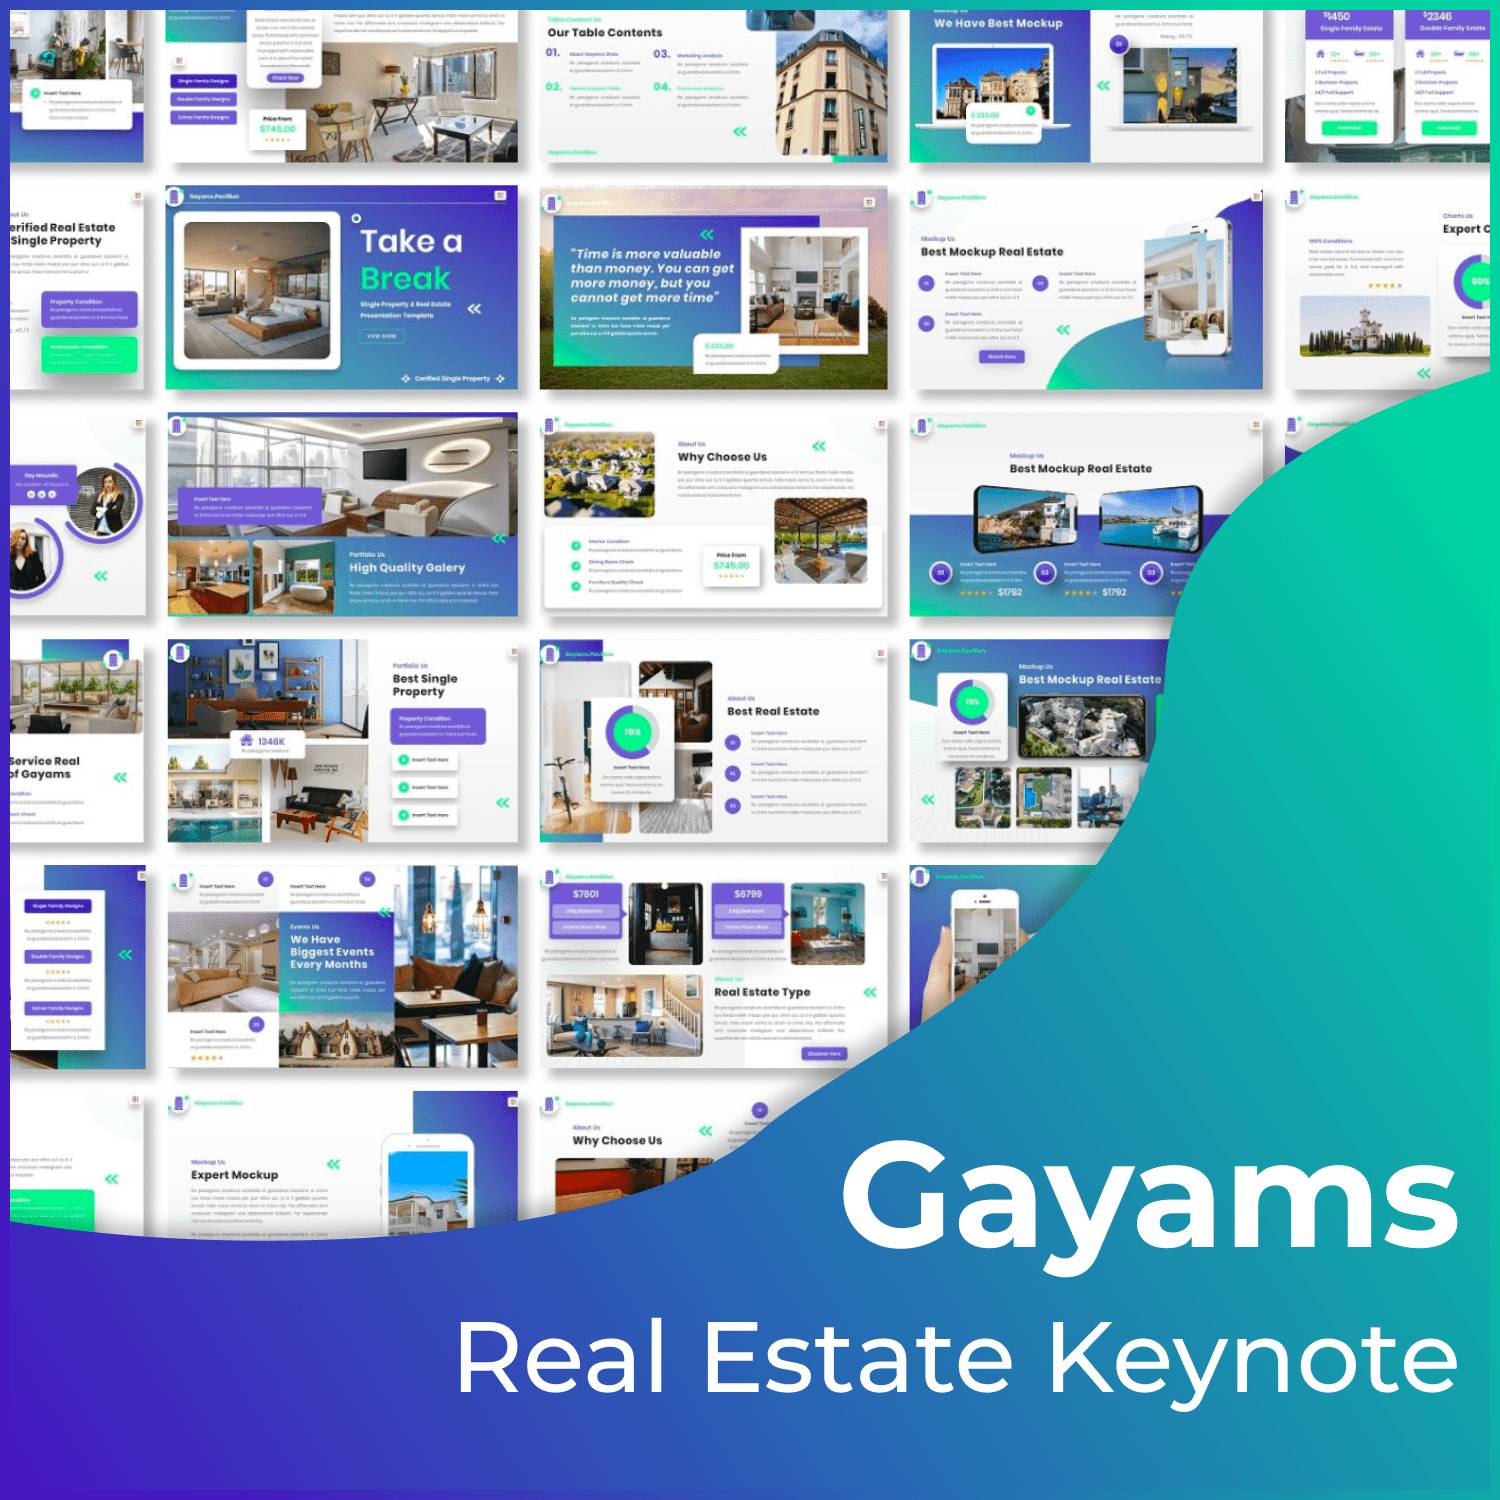 Gayams real estate keynote cover.